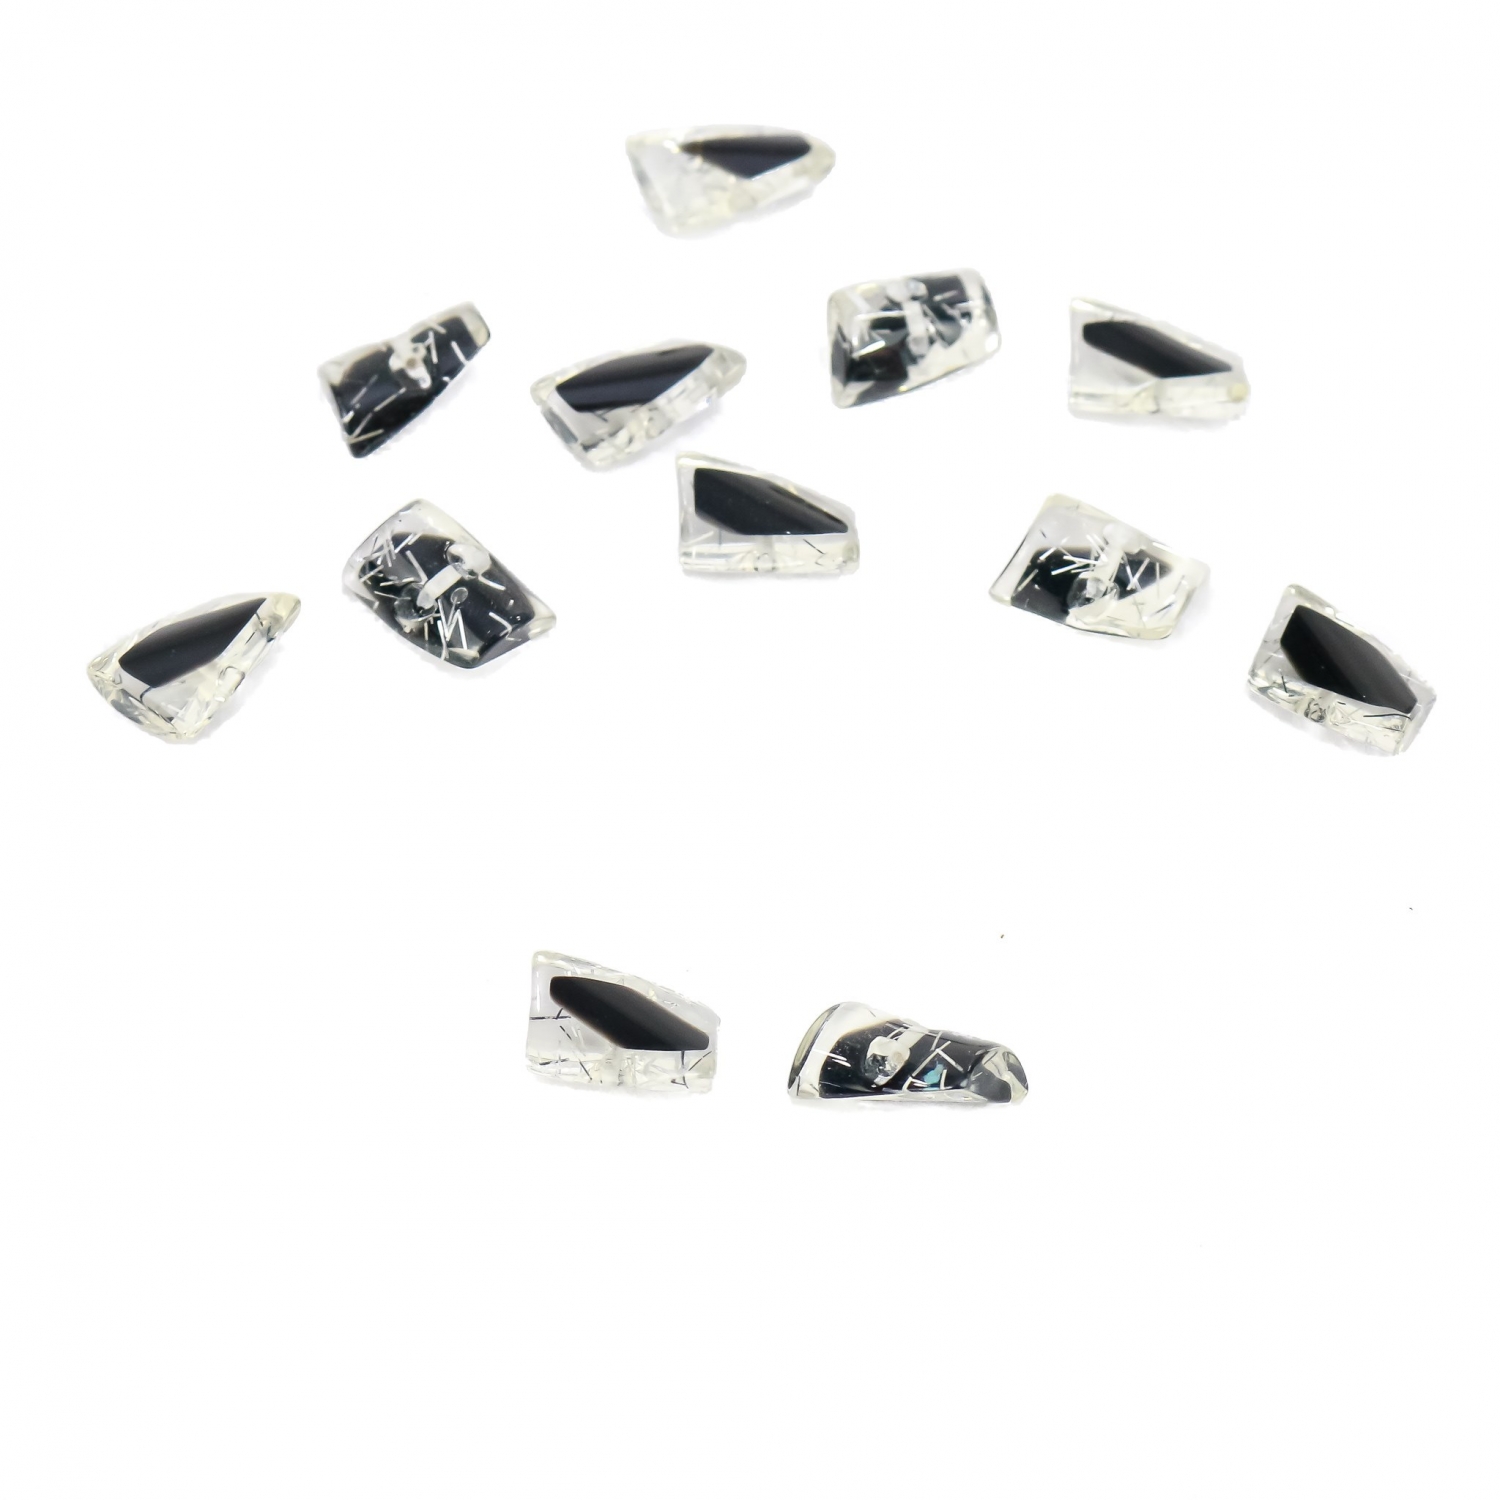 Plastic Shank Buttons, Size: 40L (50 pcs/pack)Code: 0315-6518